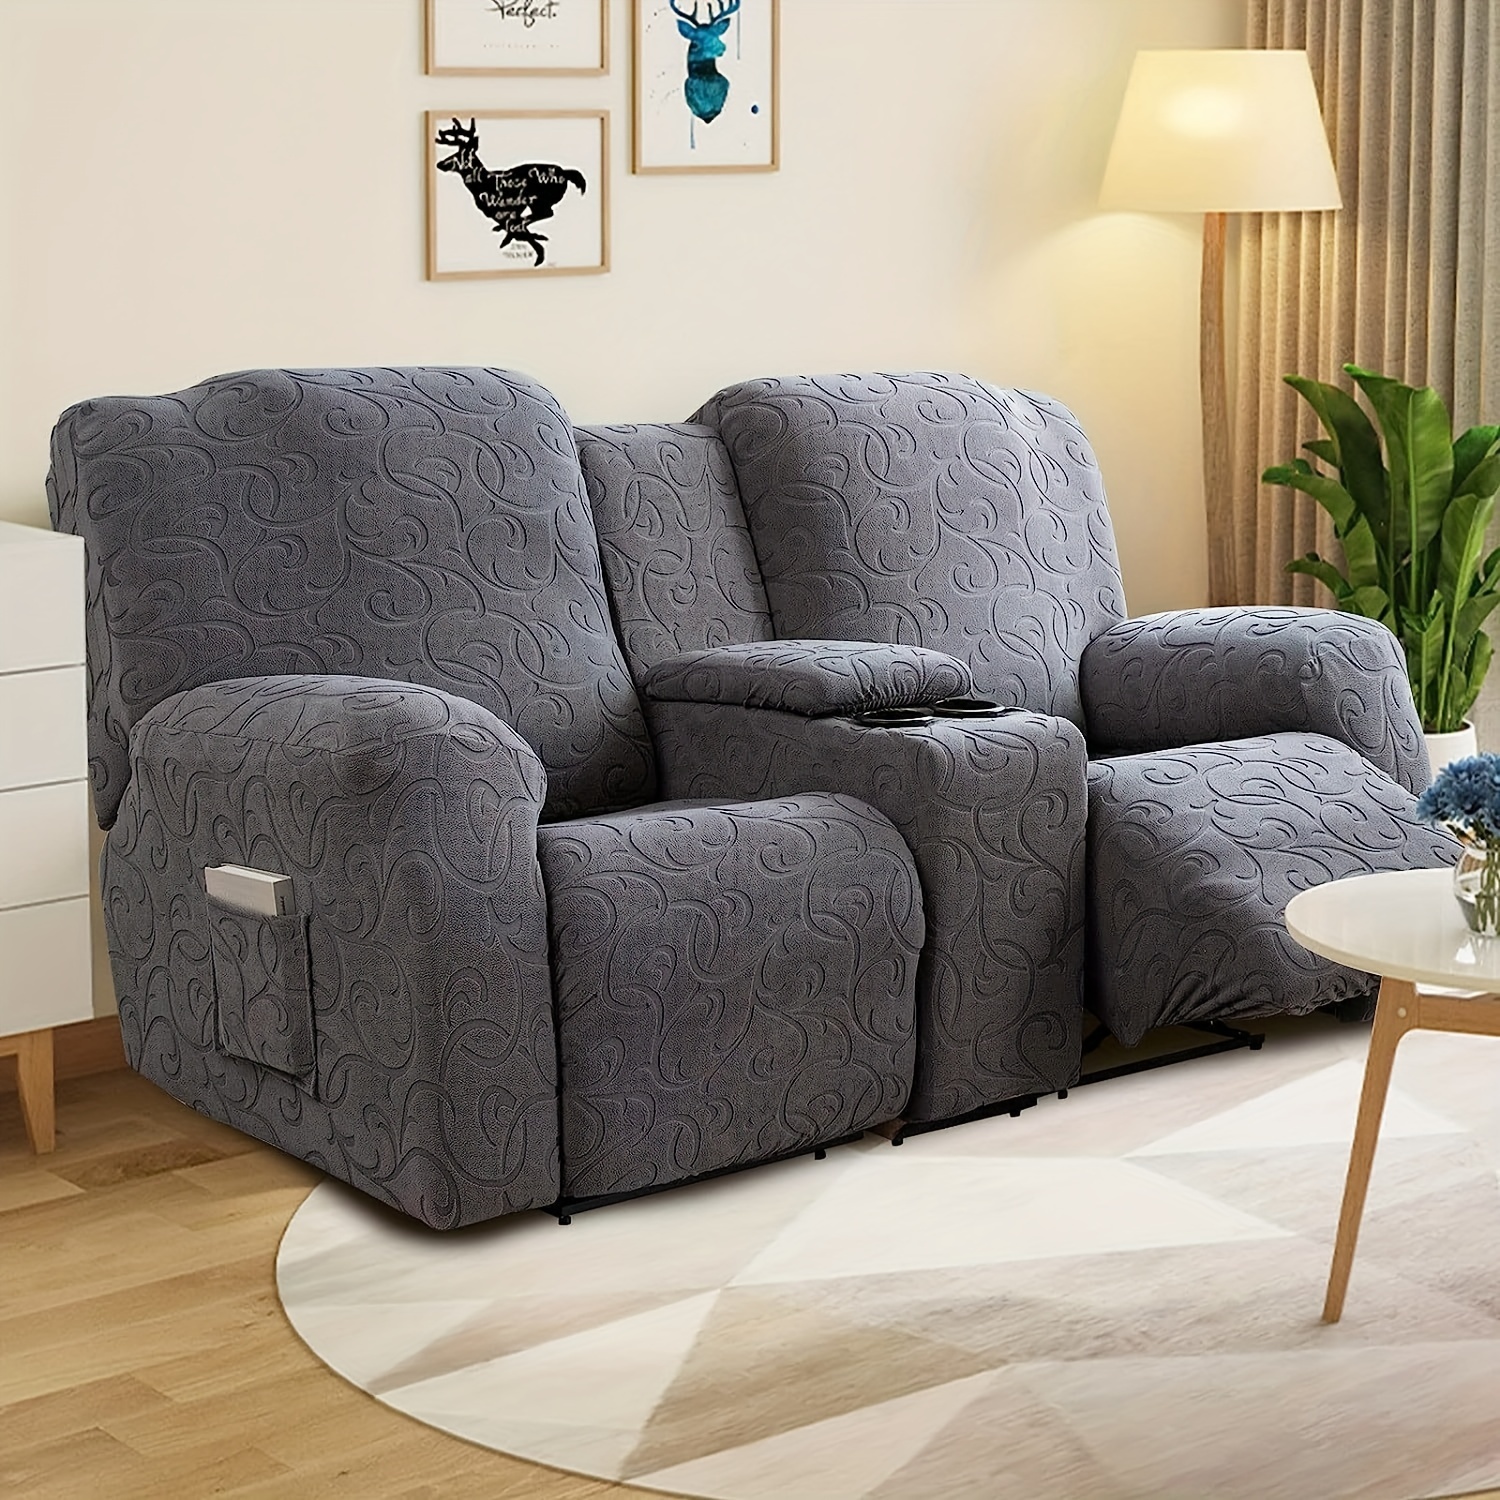 Juego de sofá reclinable, muebles de sala de estar, juego de sofá  reclinable de tela de microfibra, juego de sofá reclinable con portavasos  para